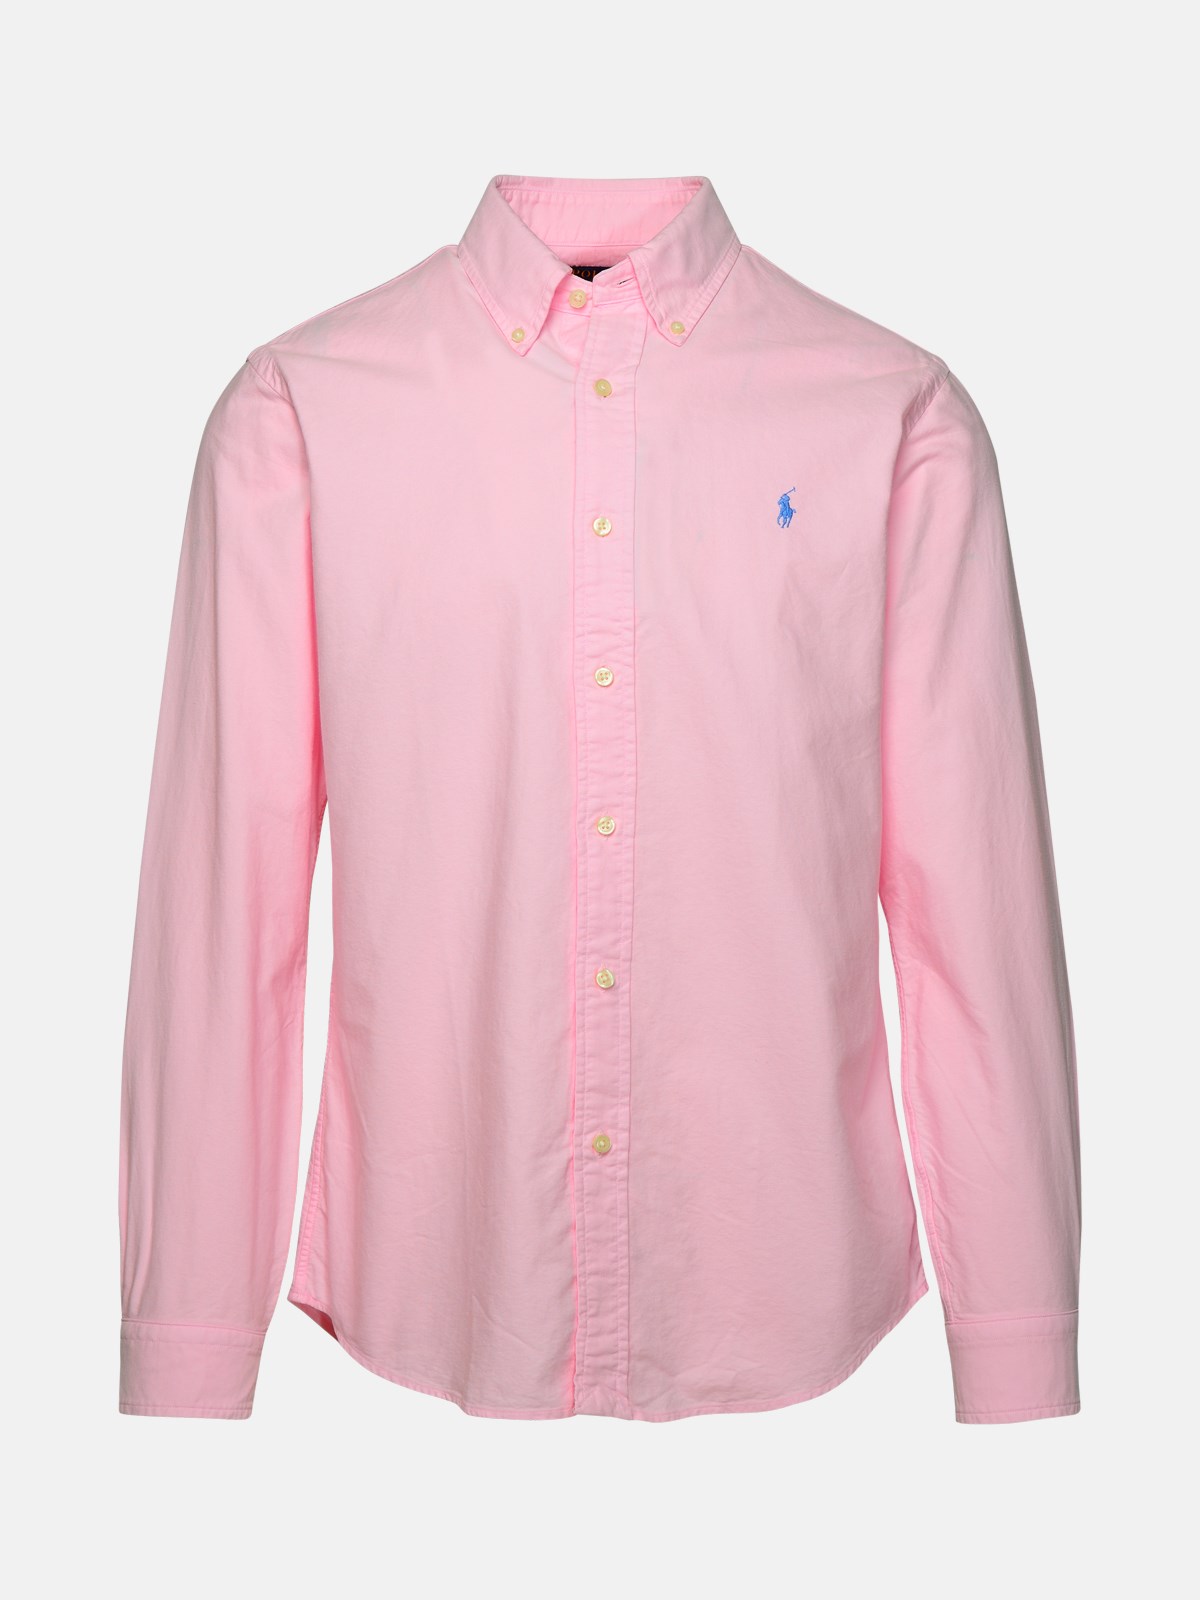 Polo Ralph Lauren Pink Cotton Shirt